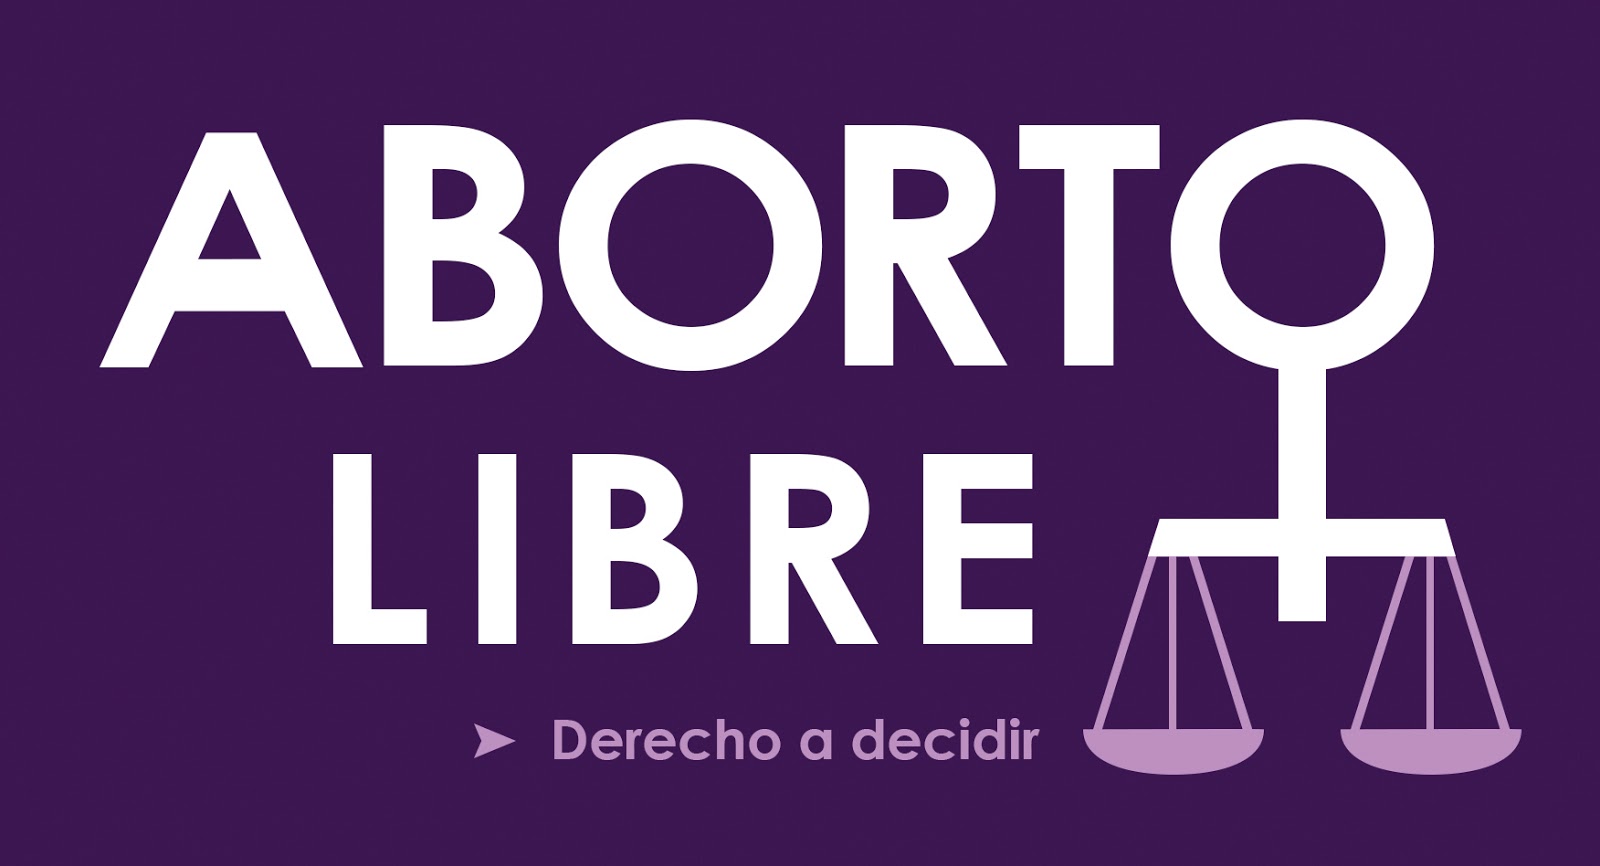 La objeción de conciencia no debe usarse para negar un aborto: ONU